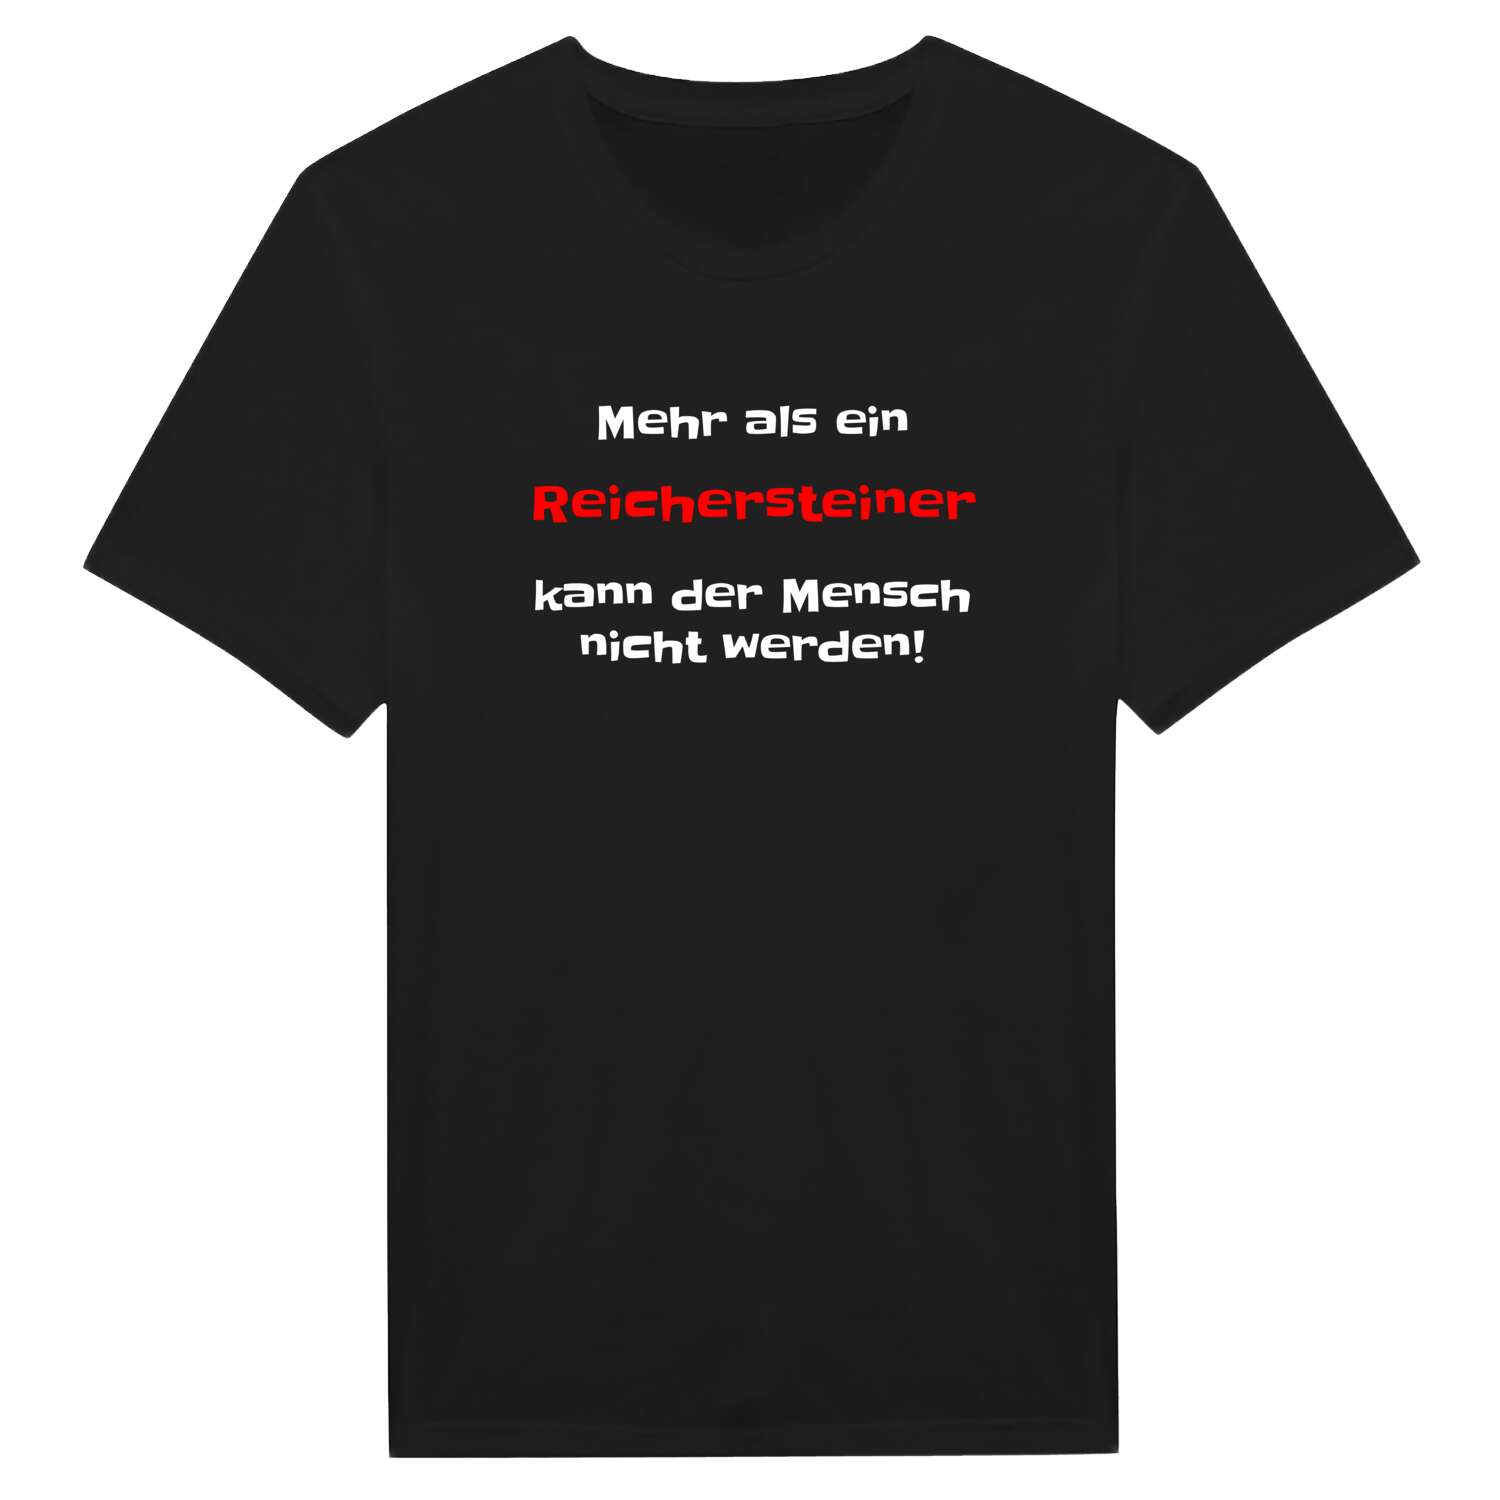 Reicherstein T-Shirt »Mehr als ein«